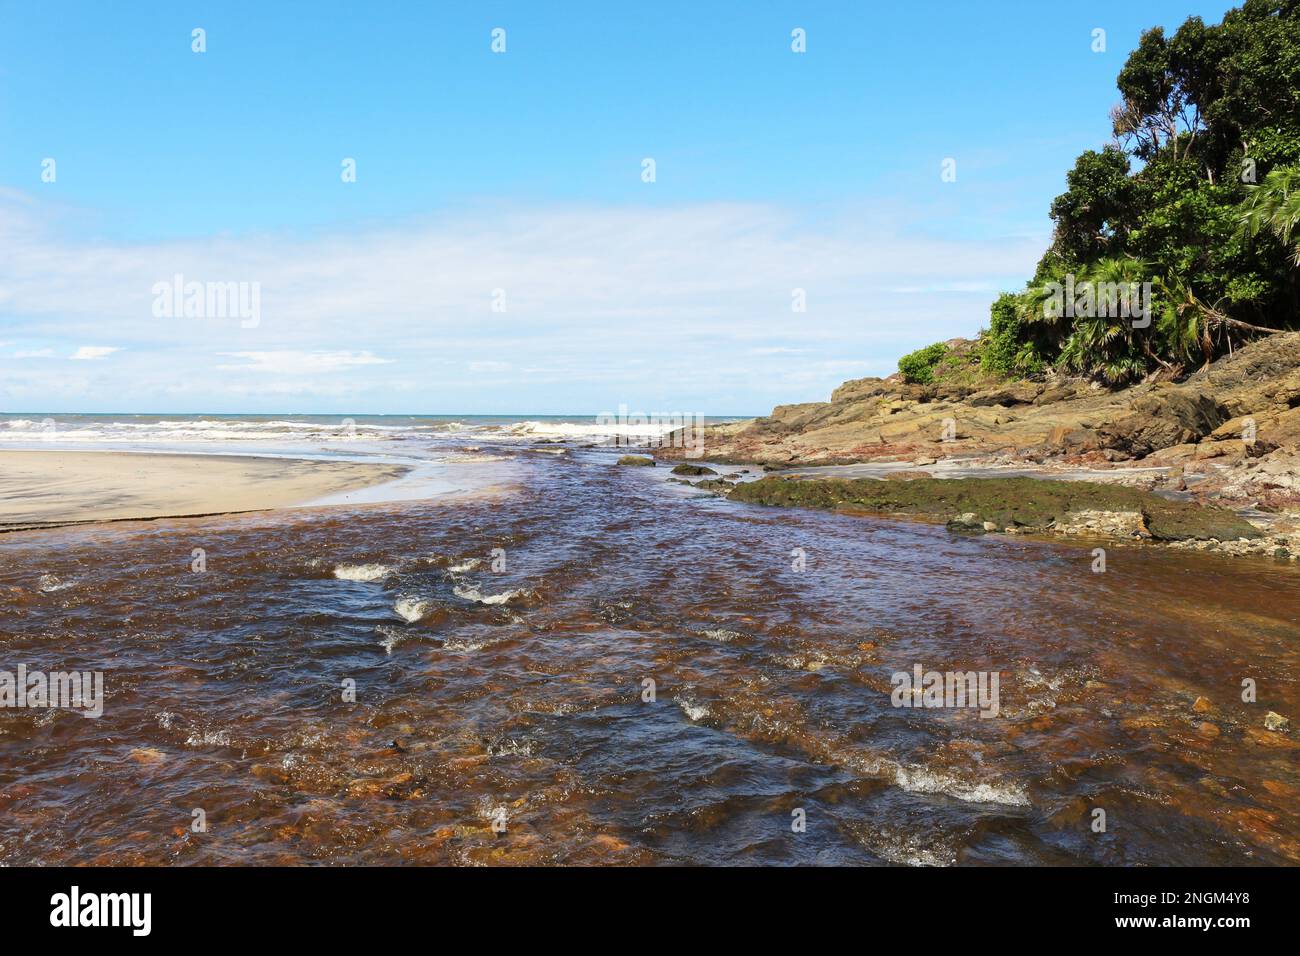 Ein Fluss aus kristallinem Wasser, der aus dem Atlantikwald kommt, trifft auf das Meer, an einem Strand an der Cocoa Coast. Stockfoto